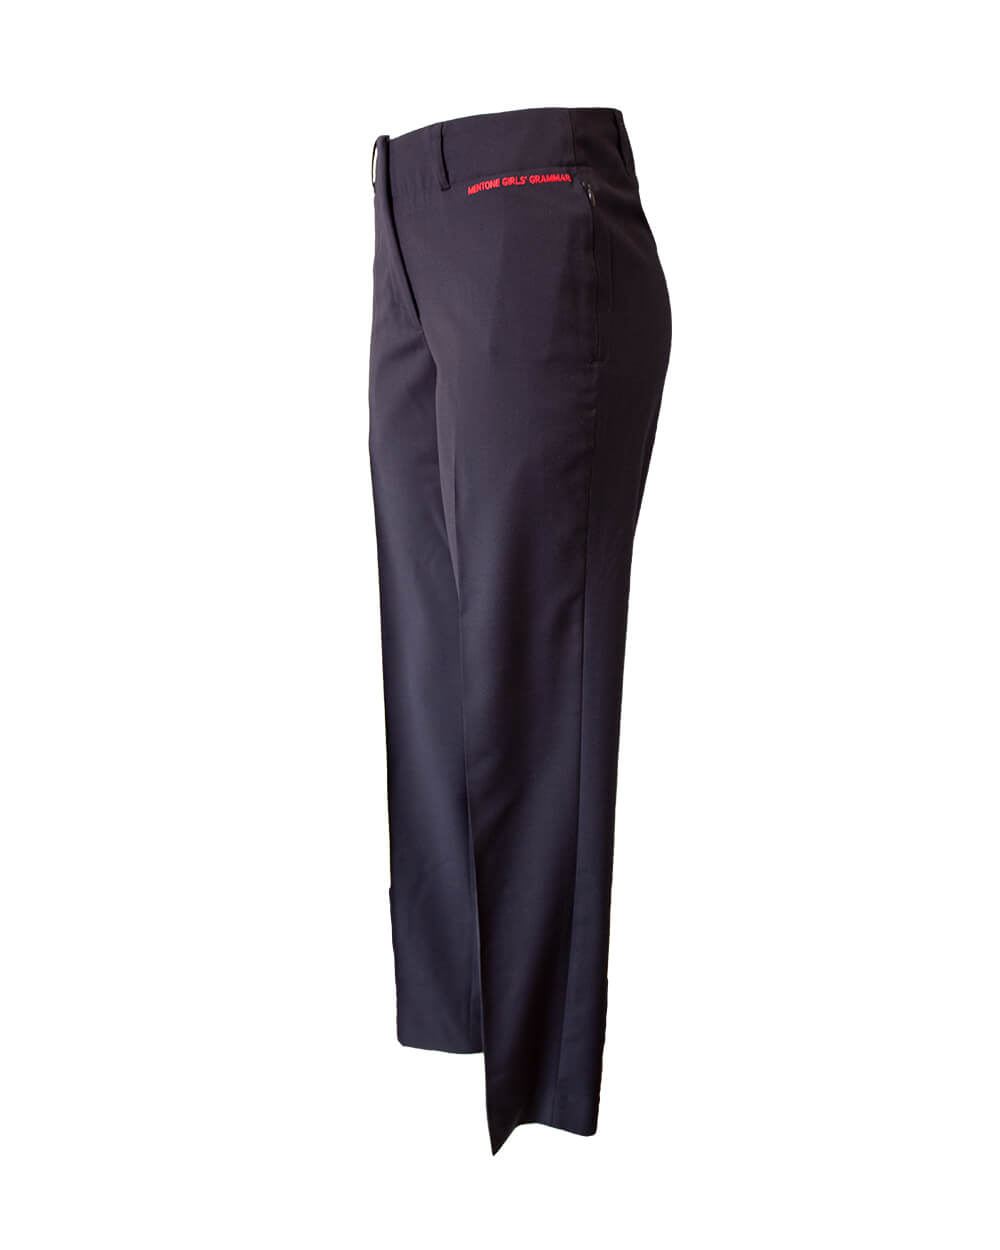 Chinos Pants Men Slim Fit Men's Trousers Suit Pants Ankle-Length Zipper  Pants Casual Pocket Pleated Solid Men's pants Khaki XXXXXXXXL - Walmart.com